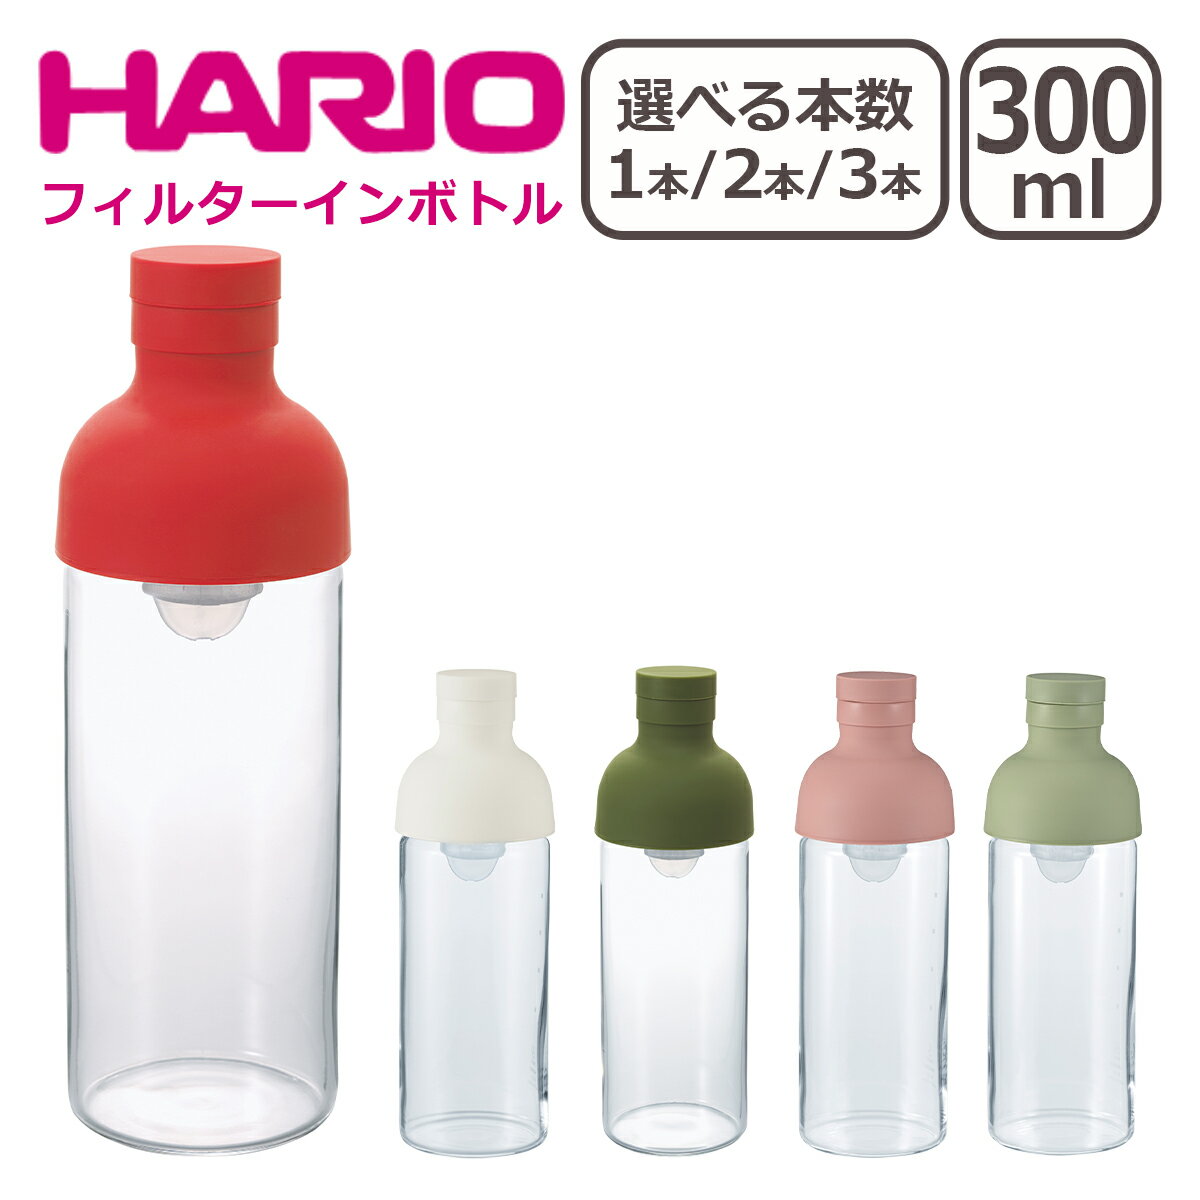 HARIO（ハリオ） フィルターインボトル 300ml 選べる個数 1個 / 2個セット / 3個セット 水出し茶ボトル 一部商品は北海道 沖縄は別途990円加算